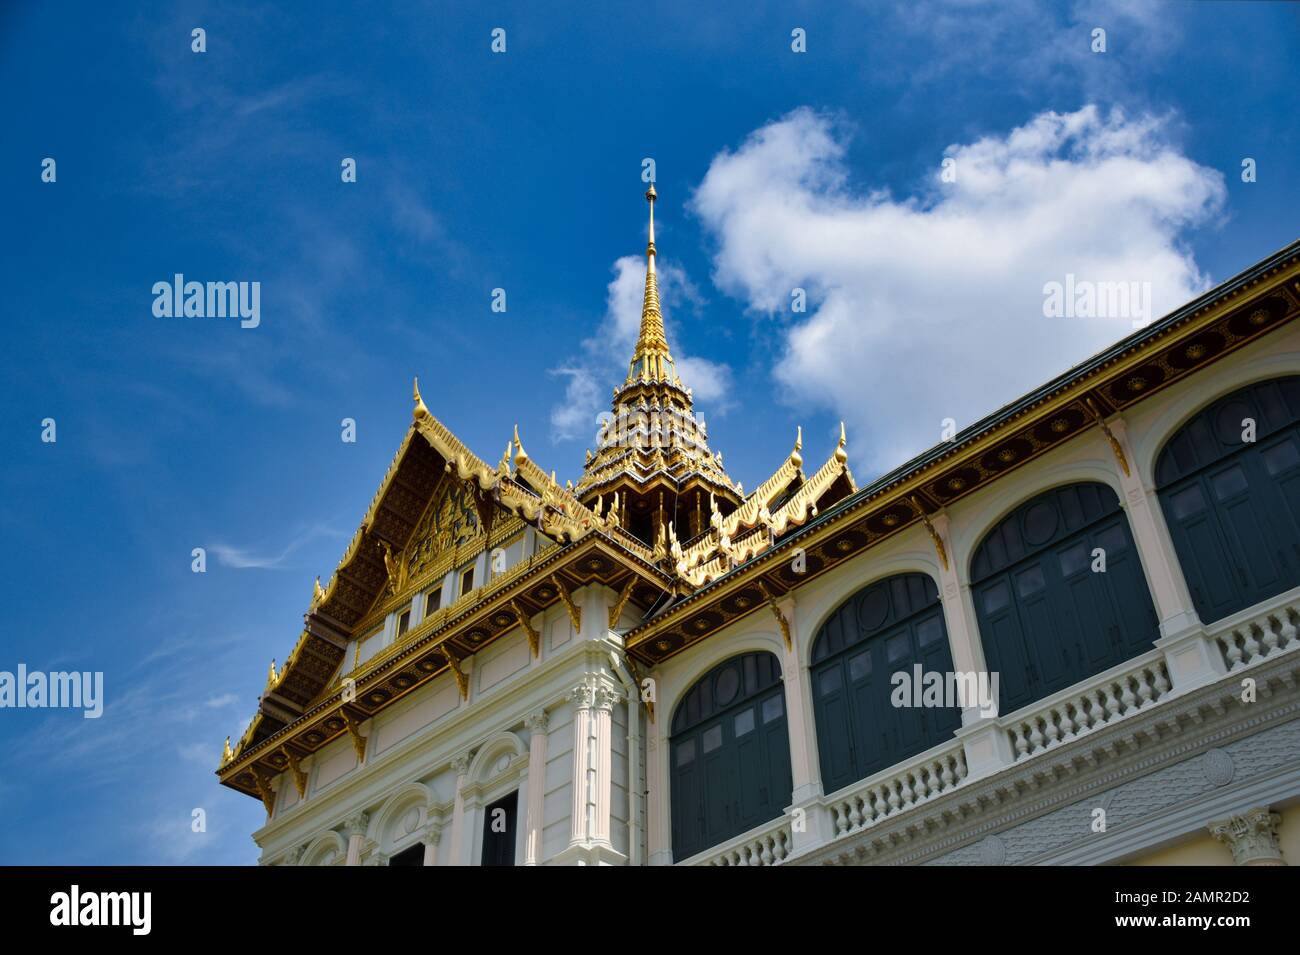 Merkmale der traditionellen thailändischen Architektur, die von Künstlern geschaffen wurde, die ihre Vorstellungskraft in die Wirklichkeit verwandeln. Detaillierte, goldene, steil abfallende Ziegeldächer, Stockfoto